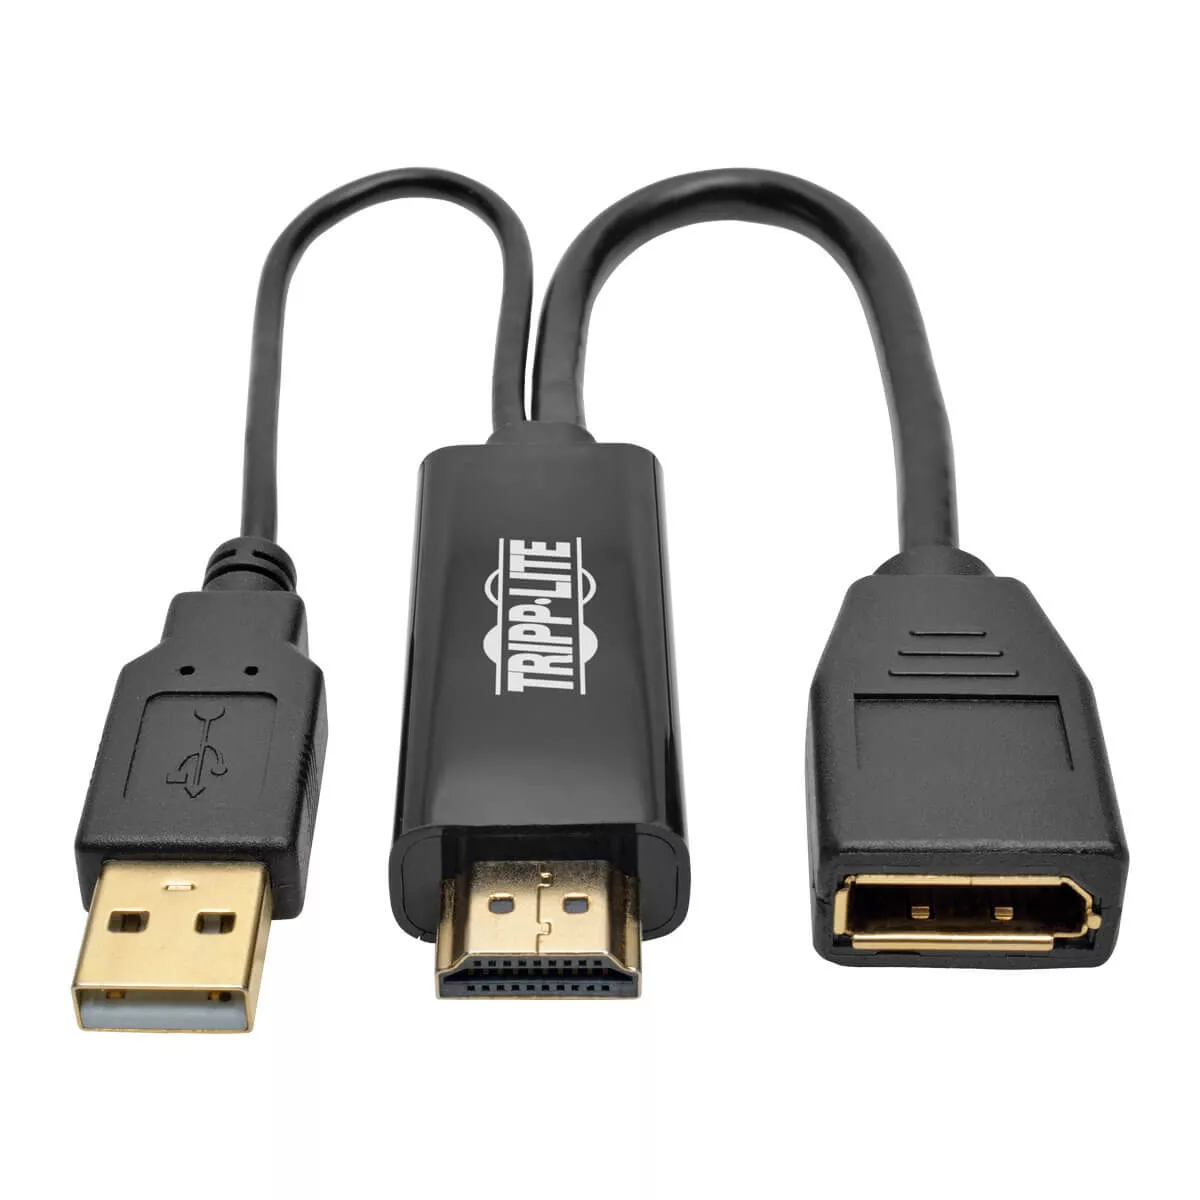 Achat EATON TRIPPLITE 4K HDMI to DisplayPort Active Adapter et autres produits de la marque Tripp Lite